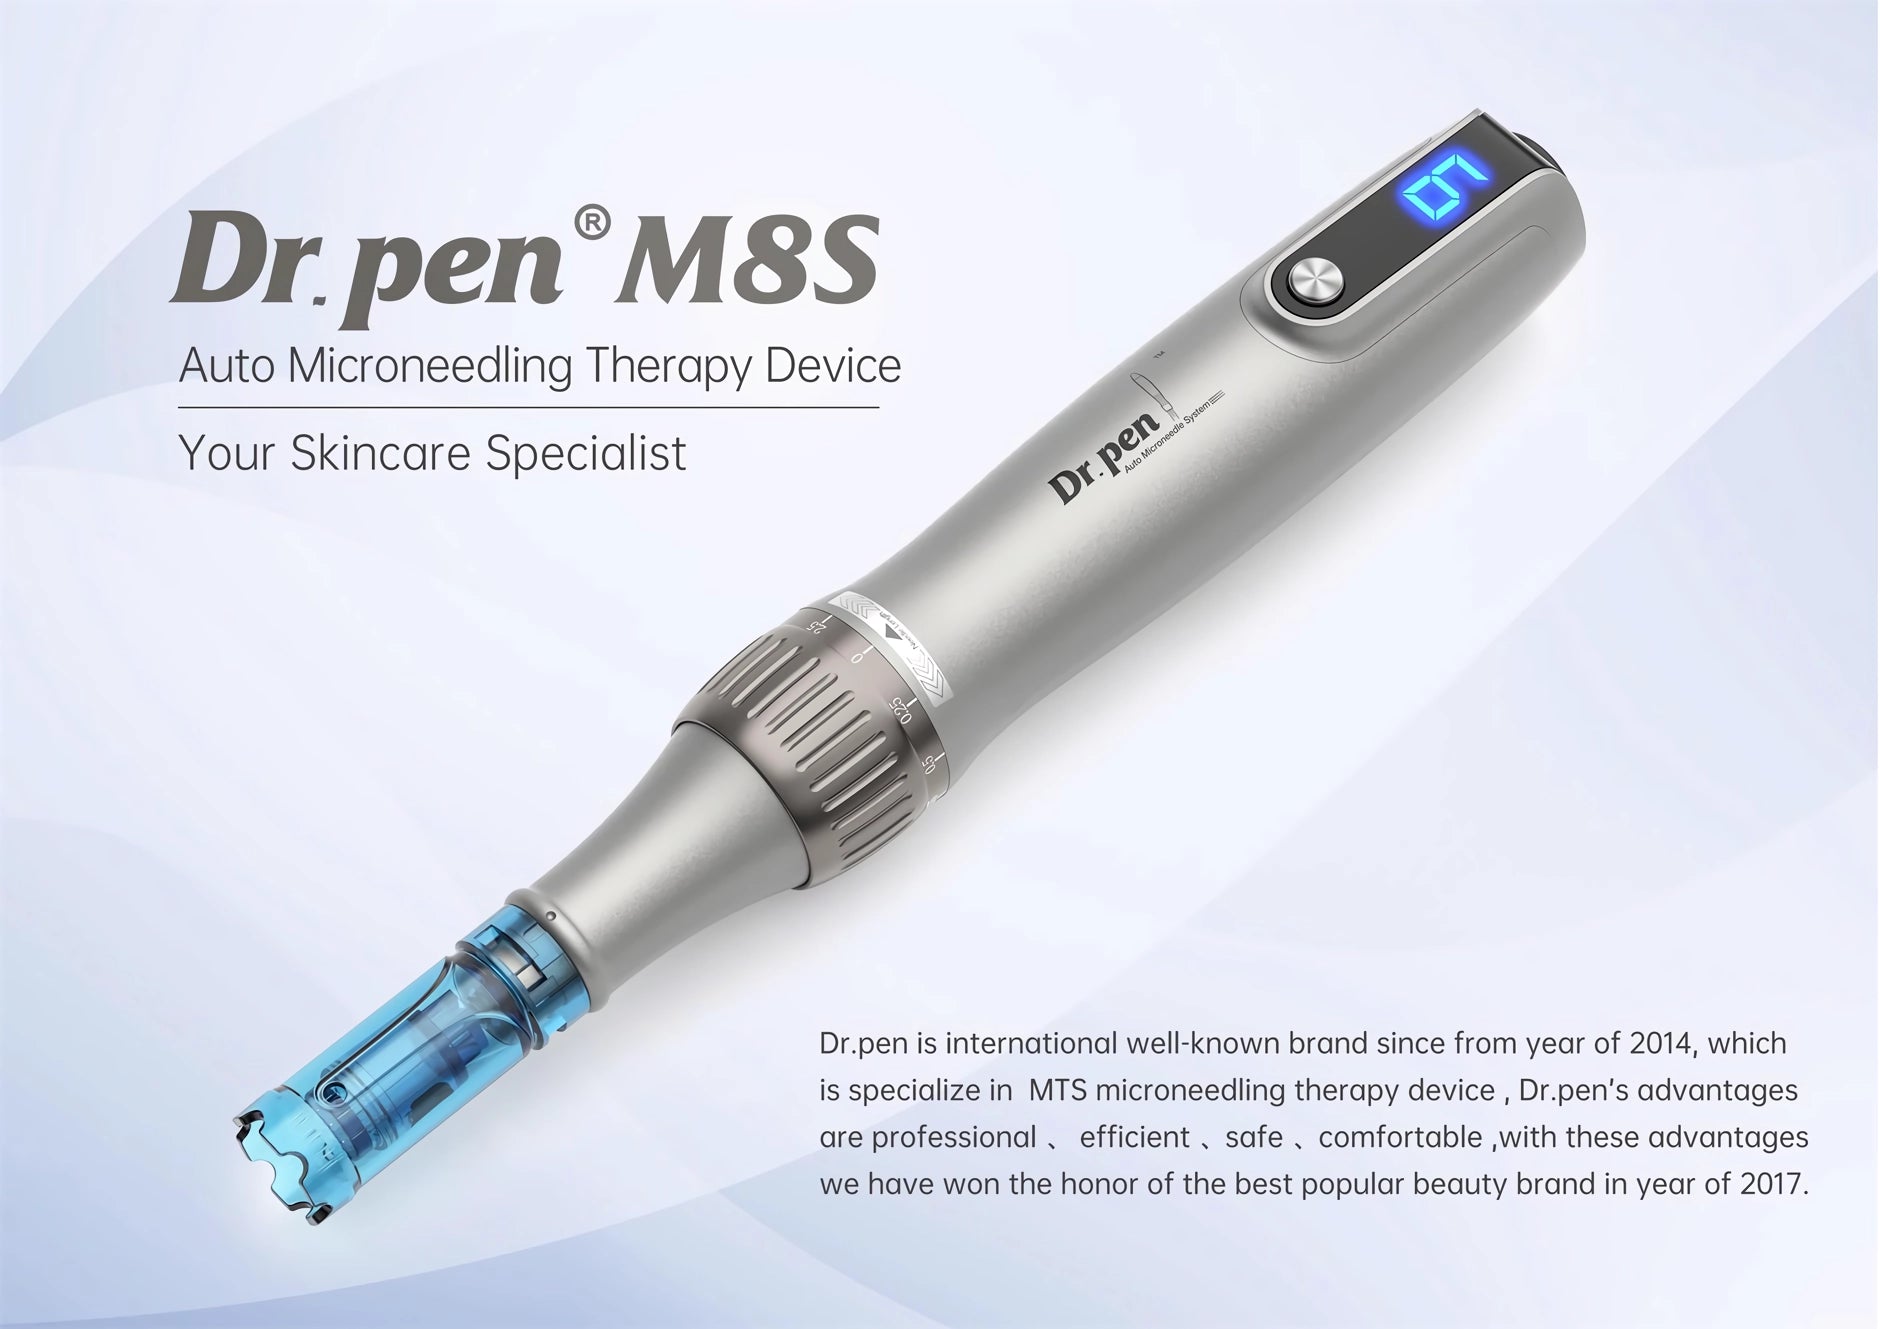 Dr.pen m8s features